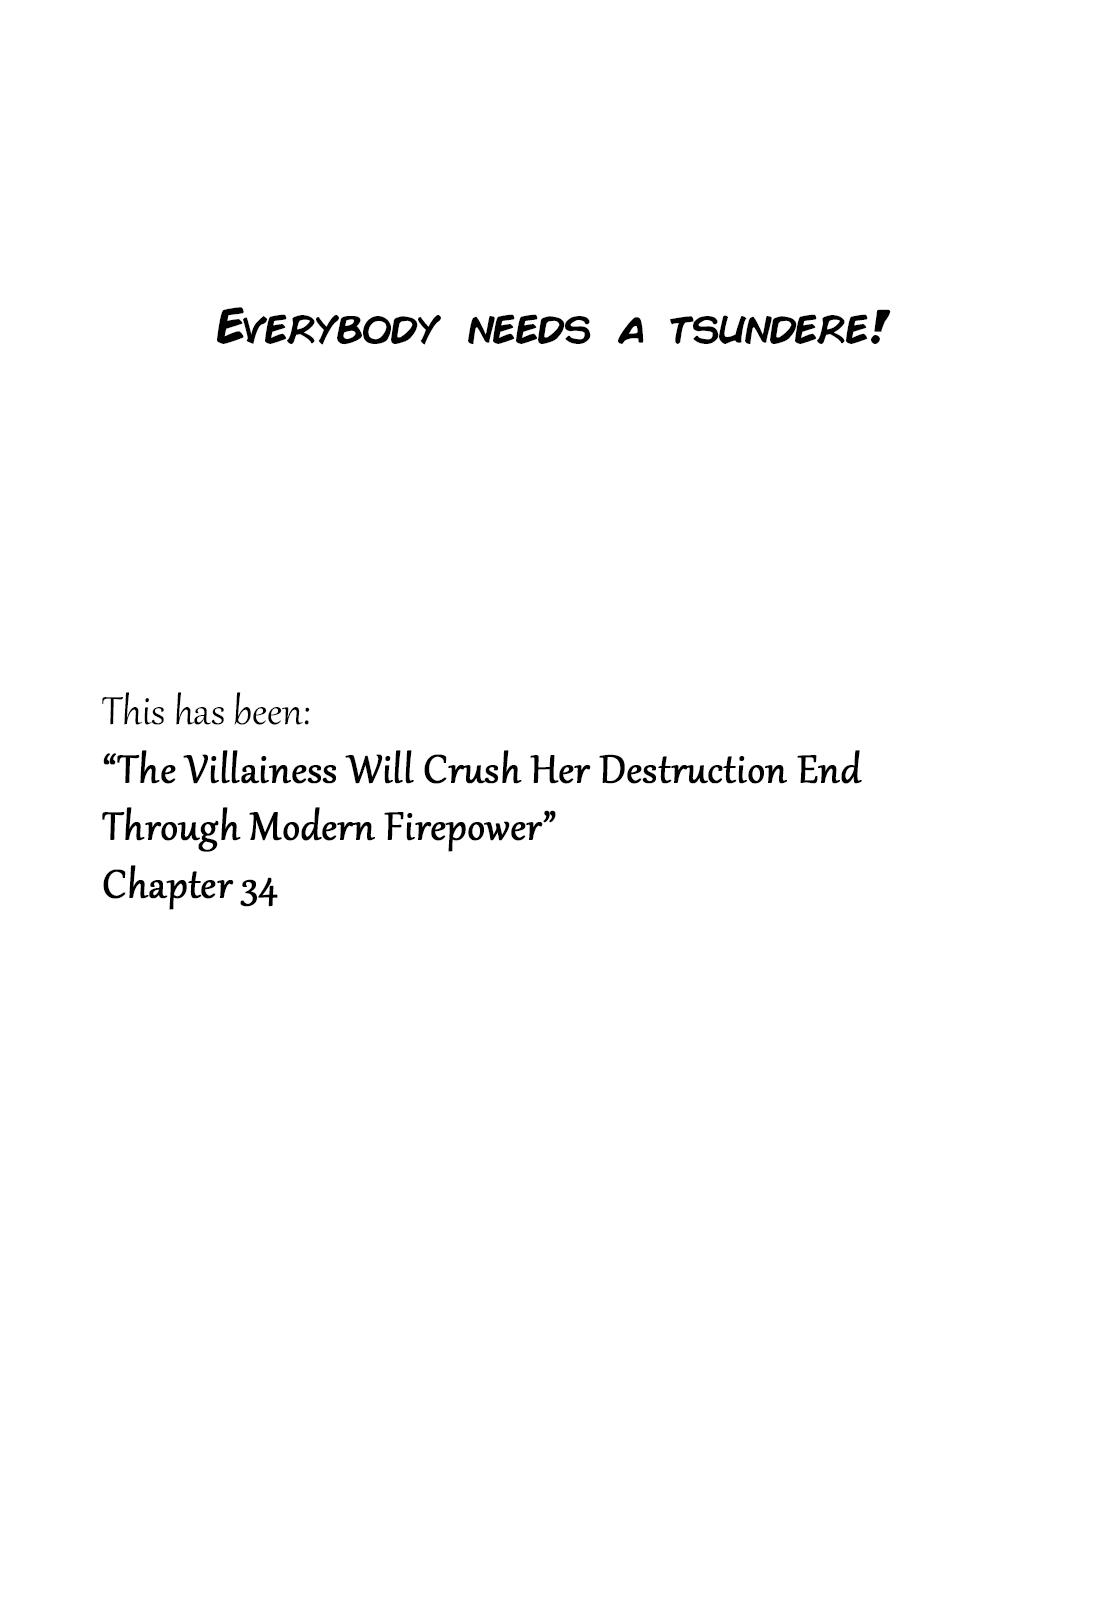 The Villainess Will Crush Her Destruction End Through Modern Firepower Vol. 2 Ch. 34 The Villainess of the Adventurer's Guild (Second part)